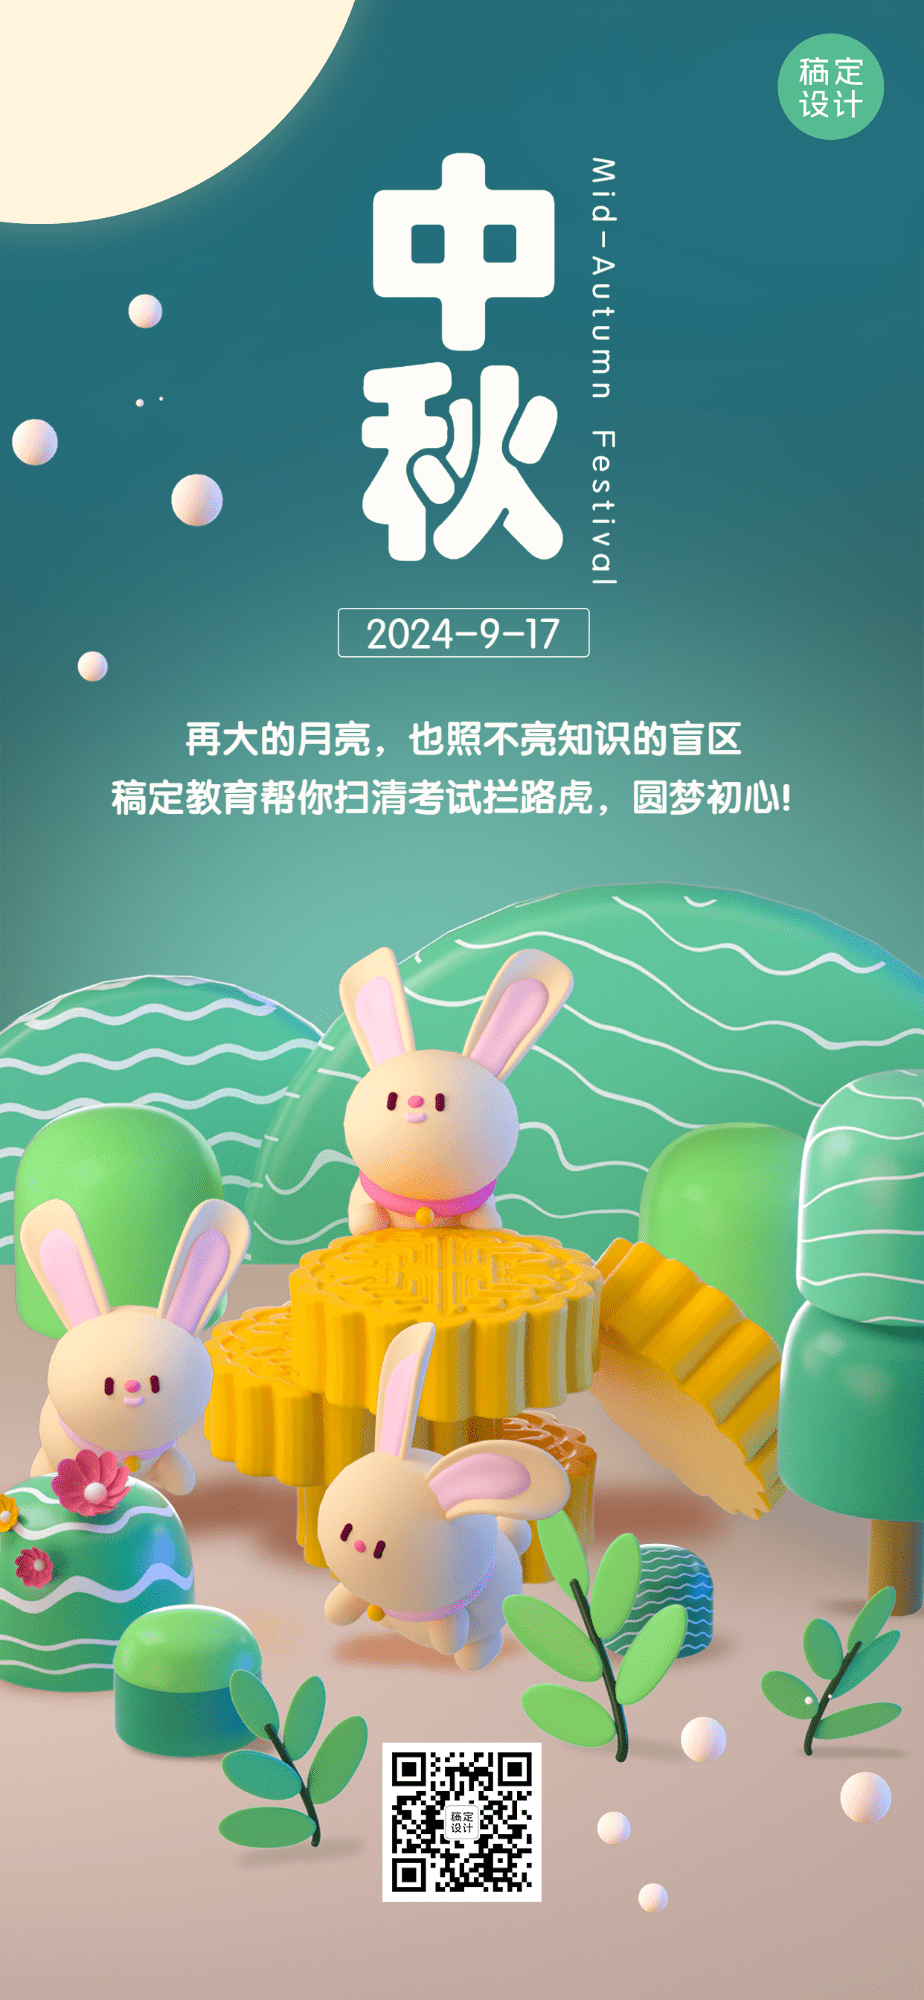 中秋节教育培训节日祝福特定风格3D全屏海报